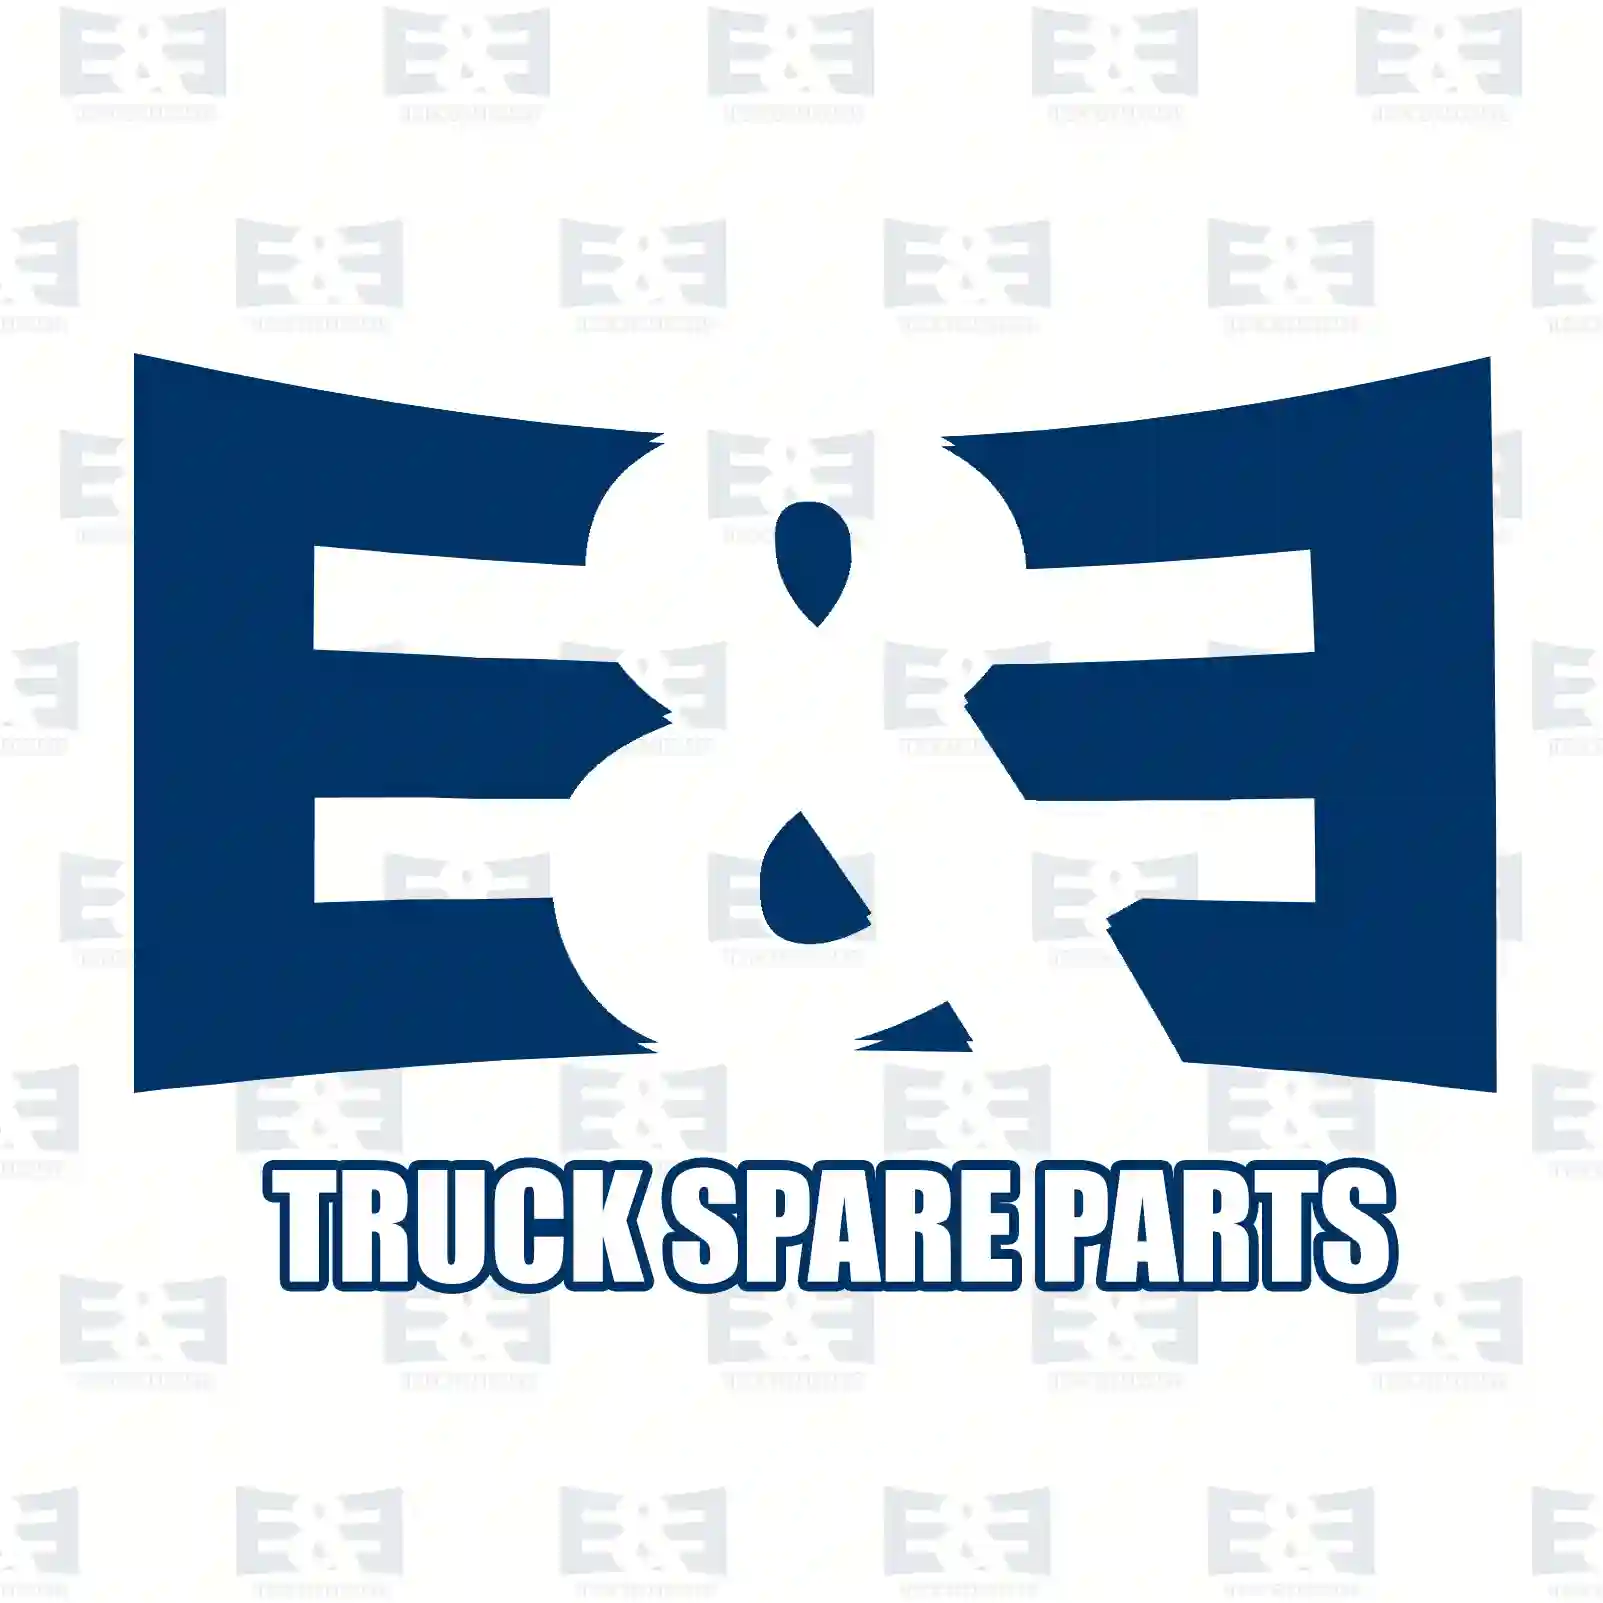 Oil seal, 2E2279121, 06562790235, 0089972947, 946574, ||  2E2279121 E&E Truck Spare Parts | Truck Spare Parts, Auotomotive Spare Parts Oil seal, 2E2279121, 06562790235, 0089972947, 946574, ||  2E2279121 E&E Truck Spare Parts | Truck Spare Parts, Auotomotive Spare Parts